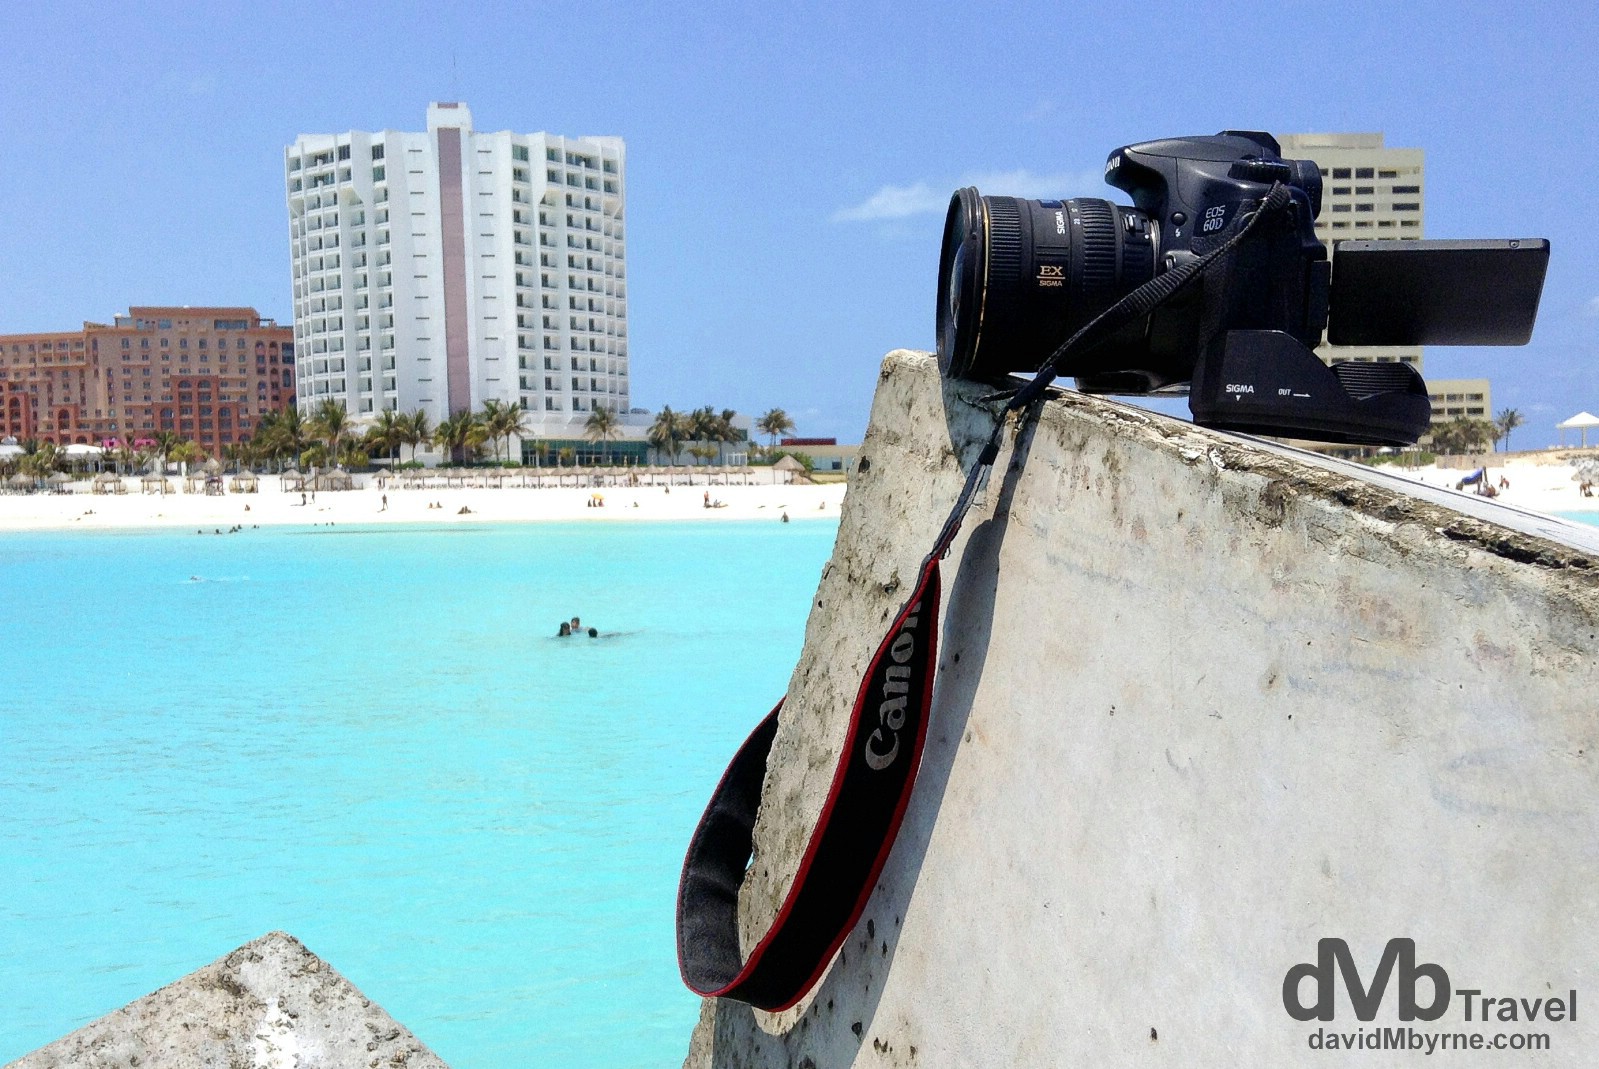 Capturing the action at Punta Cancun, Cancun, Yucatan, Mexico. May 5th 2013. 